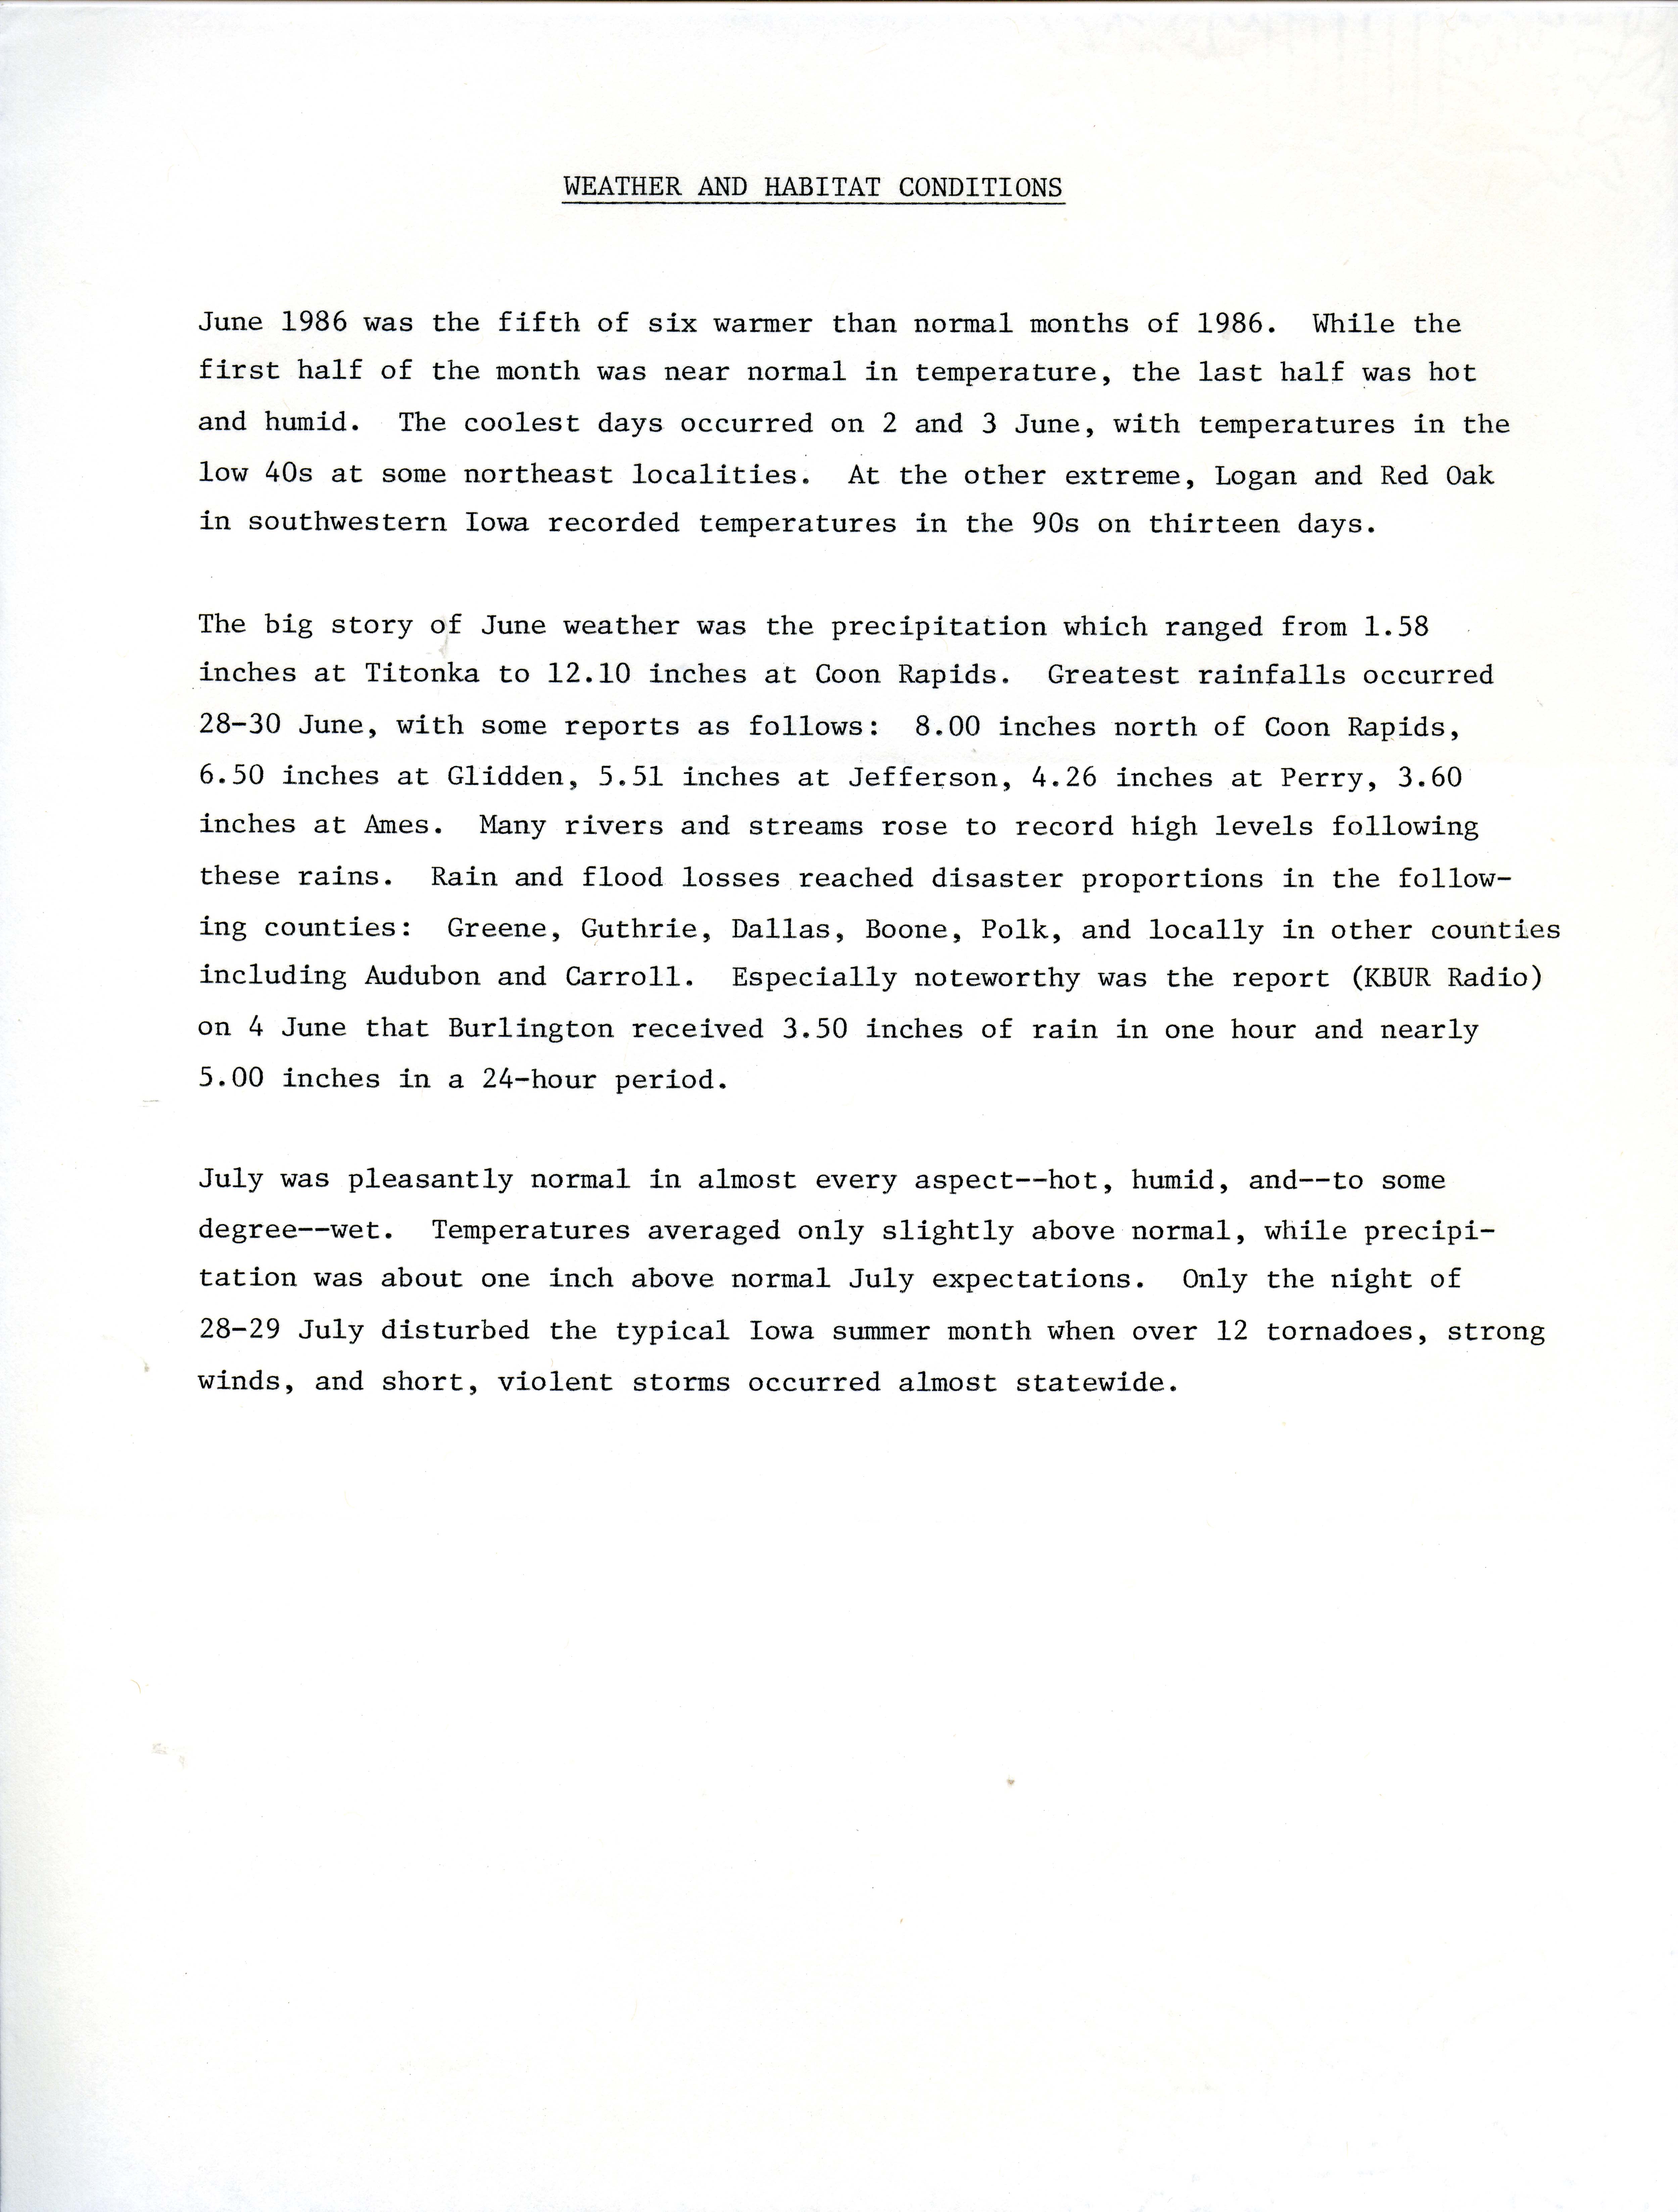 James P. Sandrock letter to James J. Dinsmore regarding a weather report, July 31, 1986